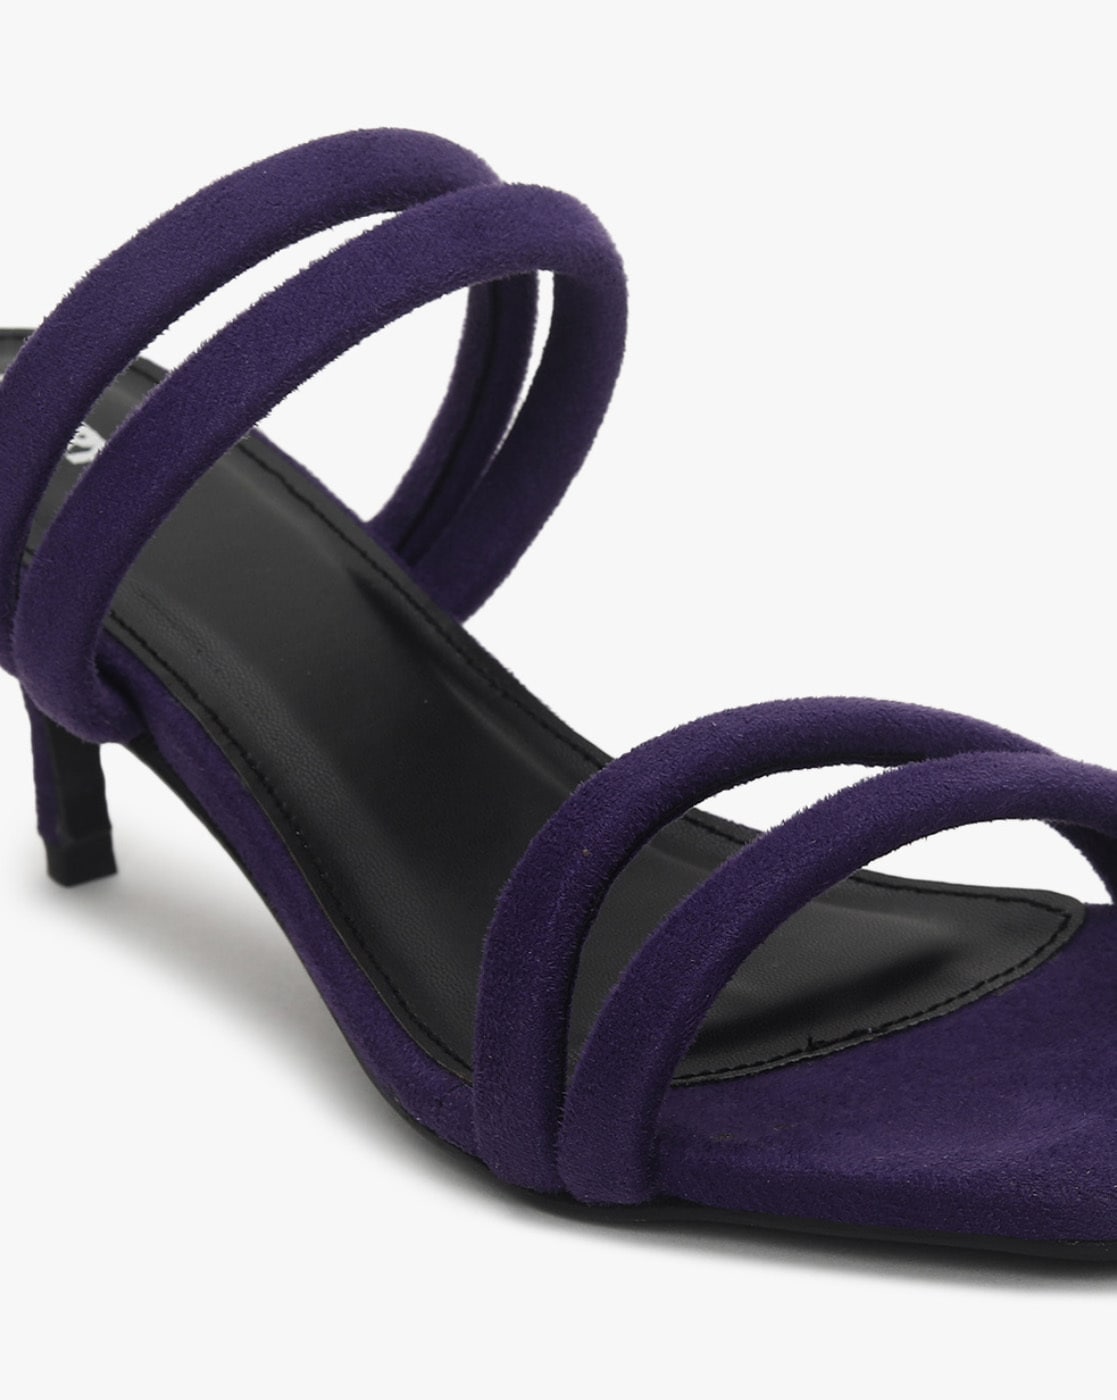 Women Sandals Platform Heels Faux Suede Sandals Purple Shoes Big Size 20 |  eBay